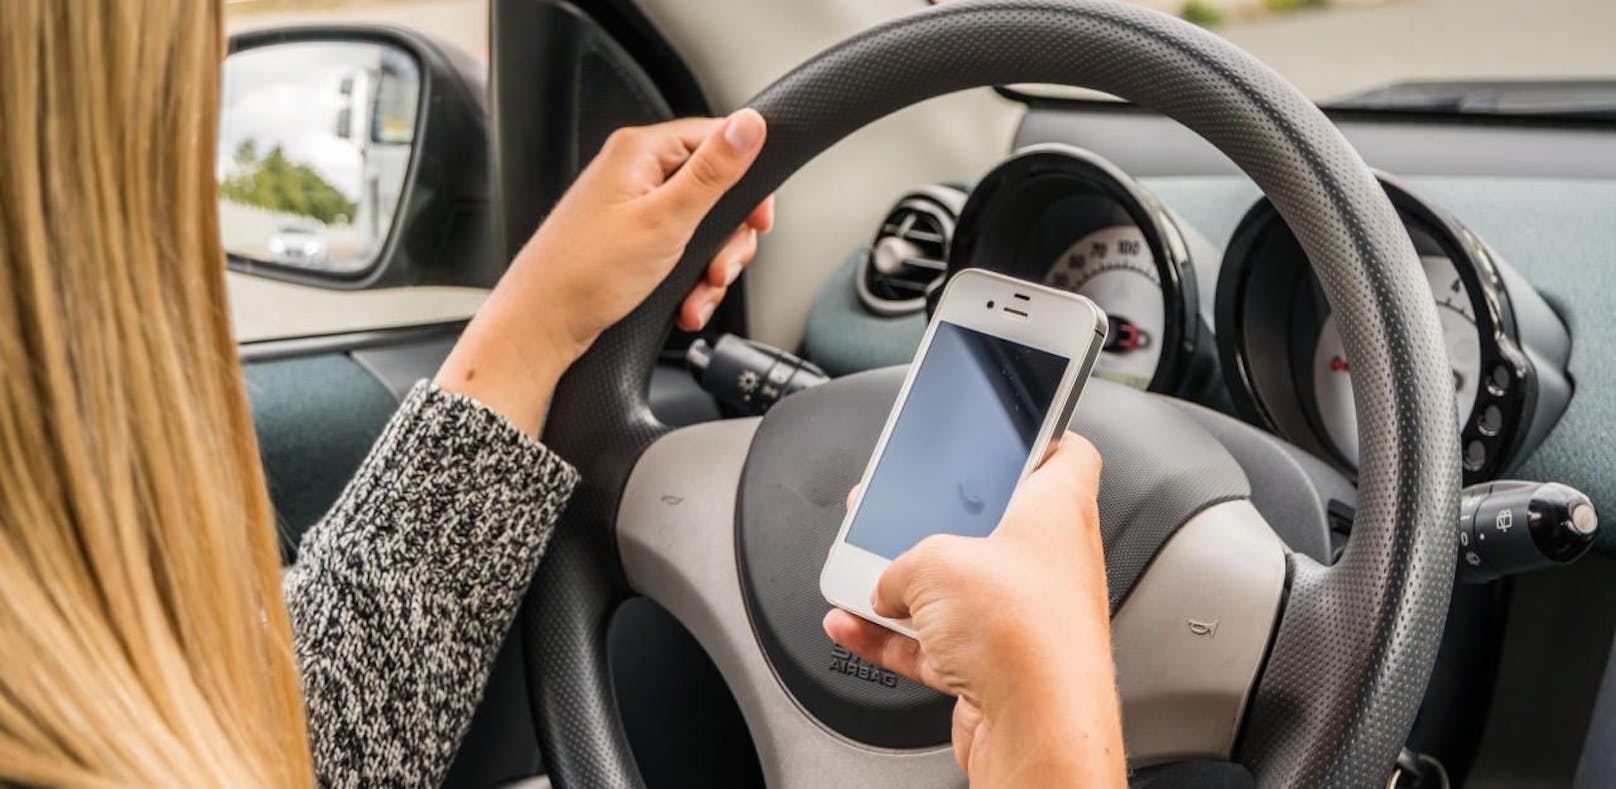 Beim Autofahren sollten Sie das Handy besser nicht benutzen